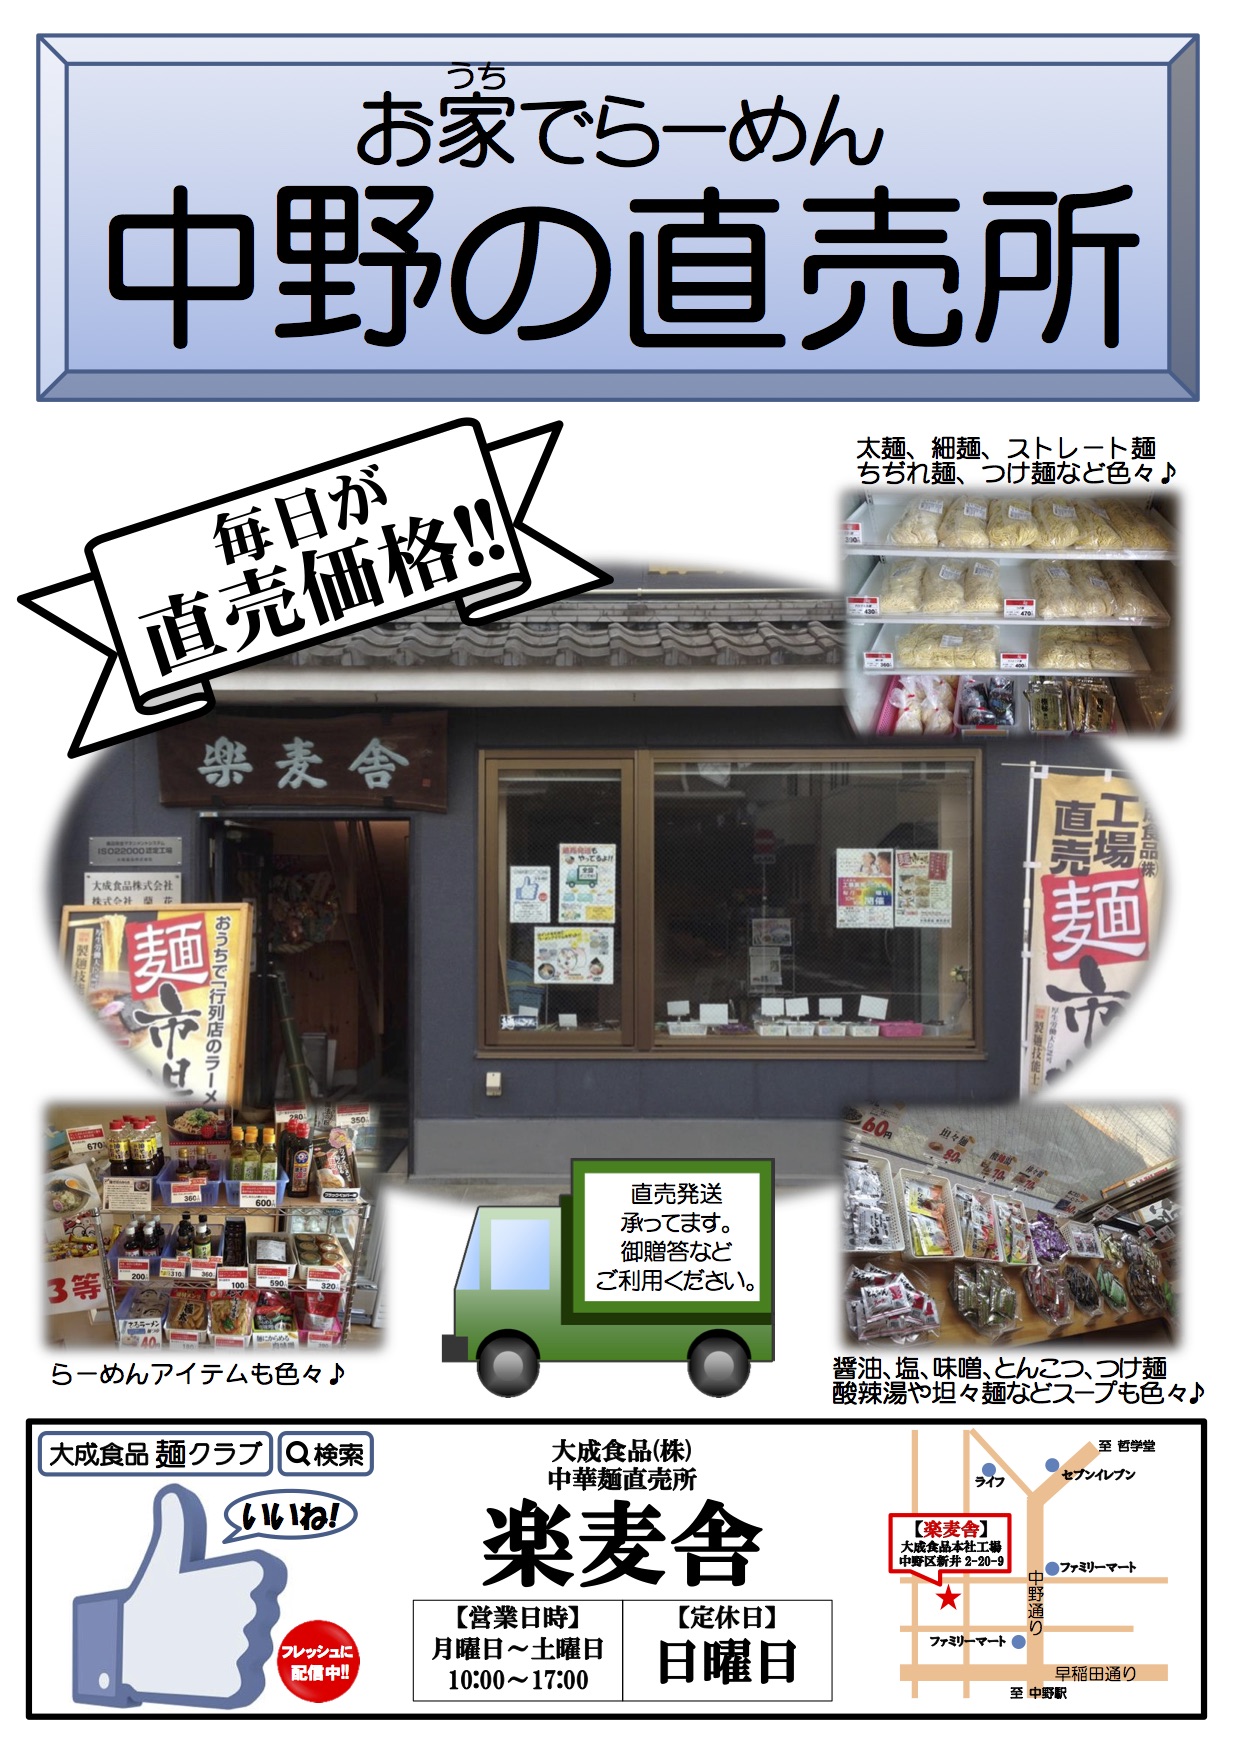 大成食品の麺が 1月5日 NACK5「大野勢太郎の楽園ラジオ」で紹介されました